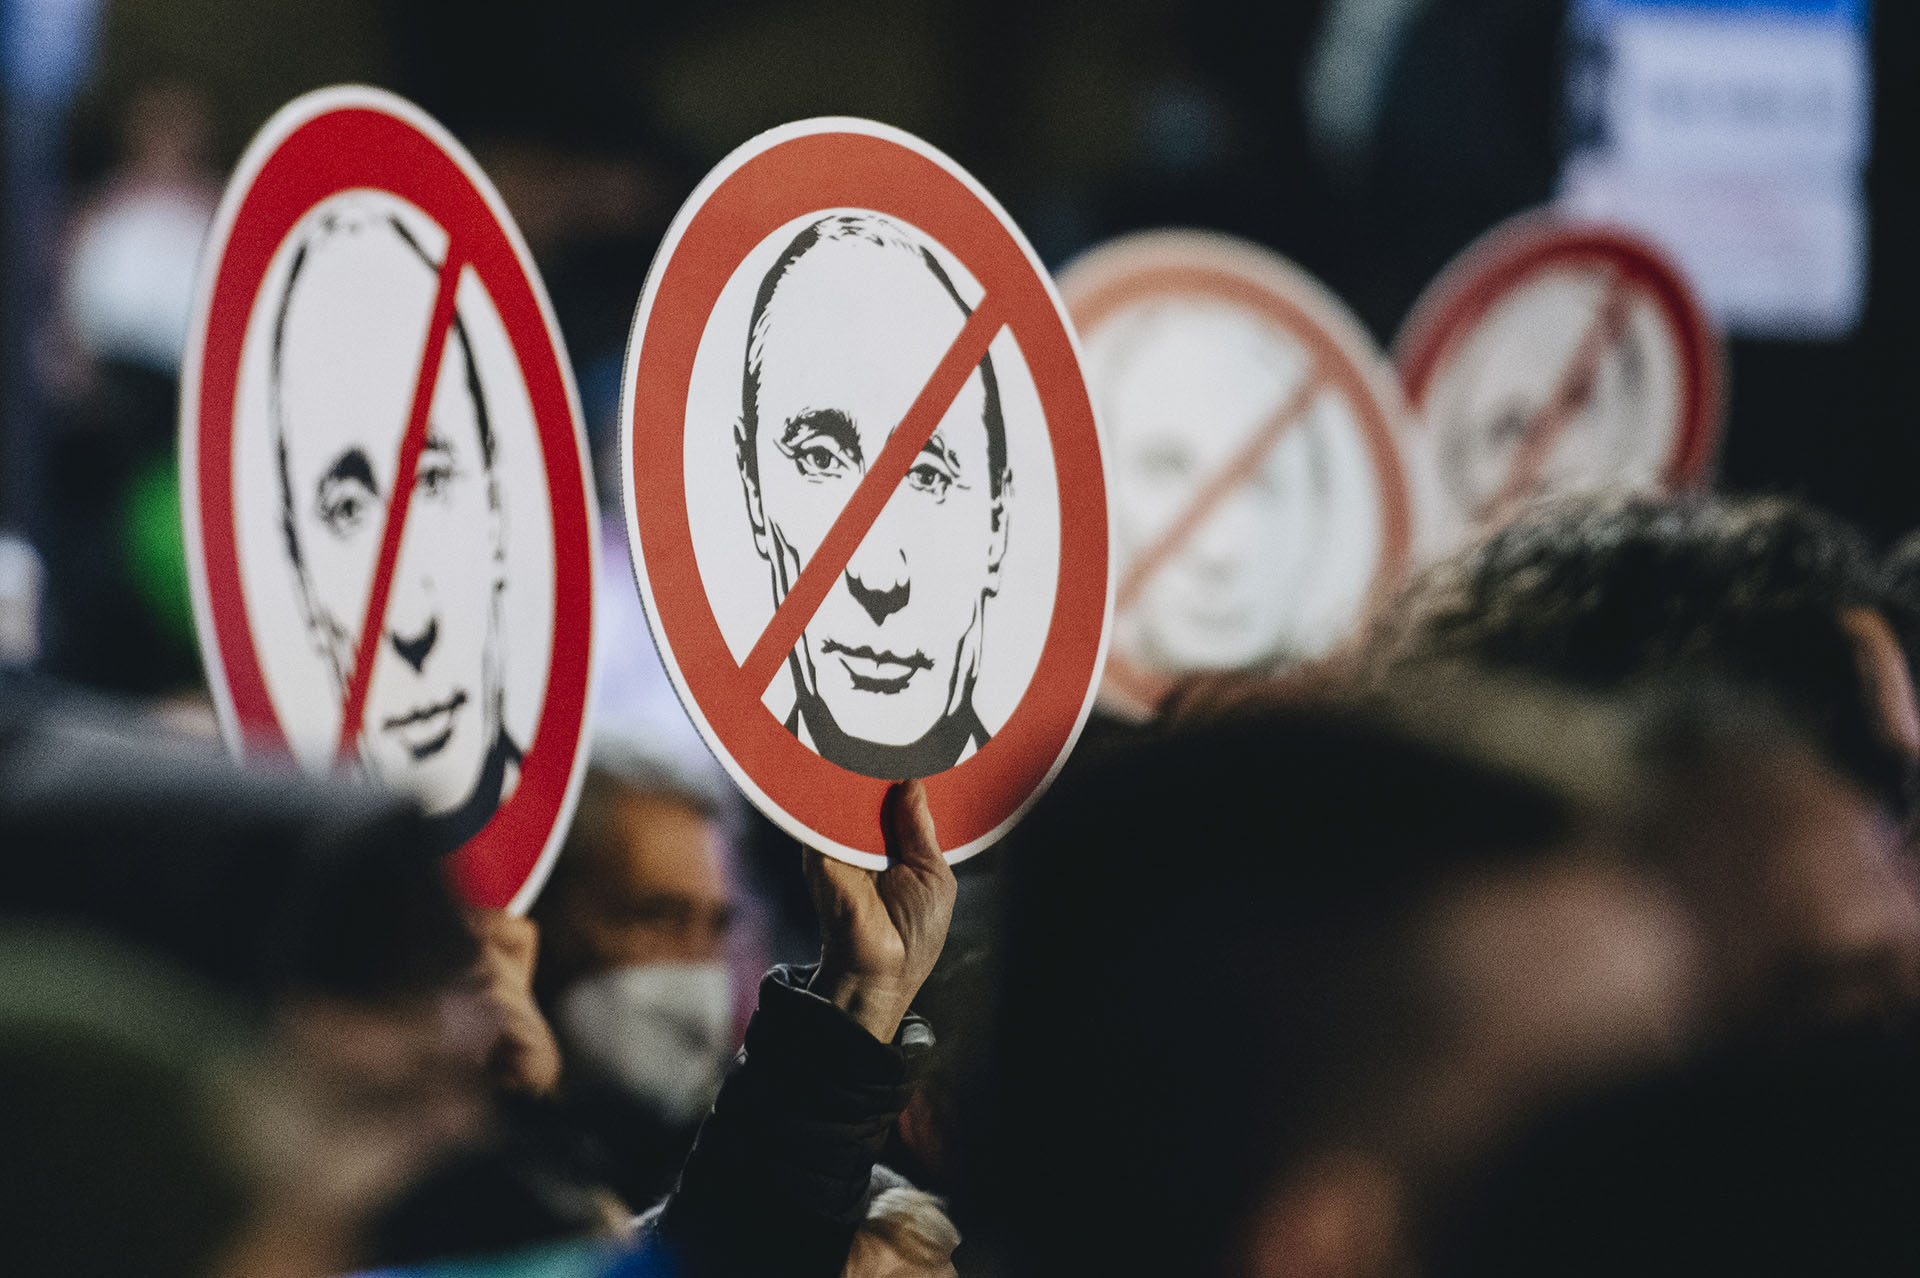 Ellentüntetés lesz vasárnap a Putyin-párti megmozdulás közelében